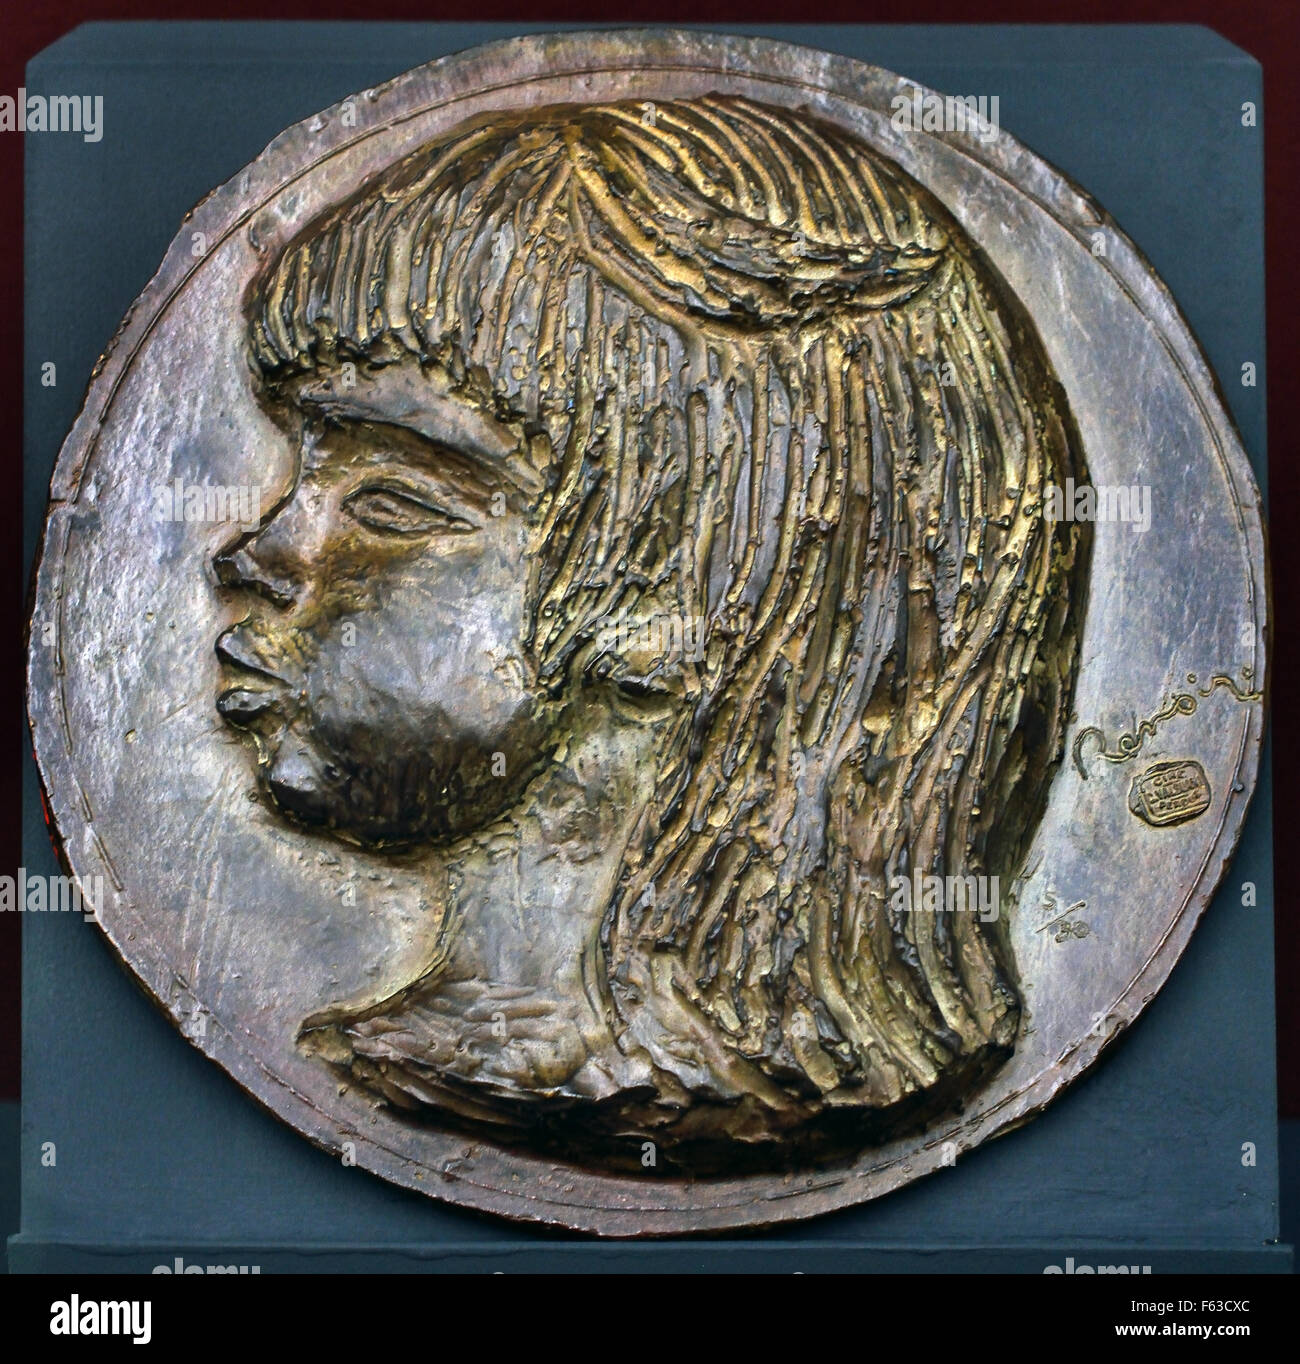 C. Valsuani Coco 1907 Médaillon de Bronze - C. Coco Valsuani 1907 Bronze Medaille Pierre Auguste Renoir 1841-1919 Französisch impressionistischen Frankreich Stockfoto